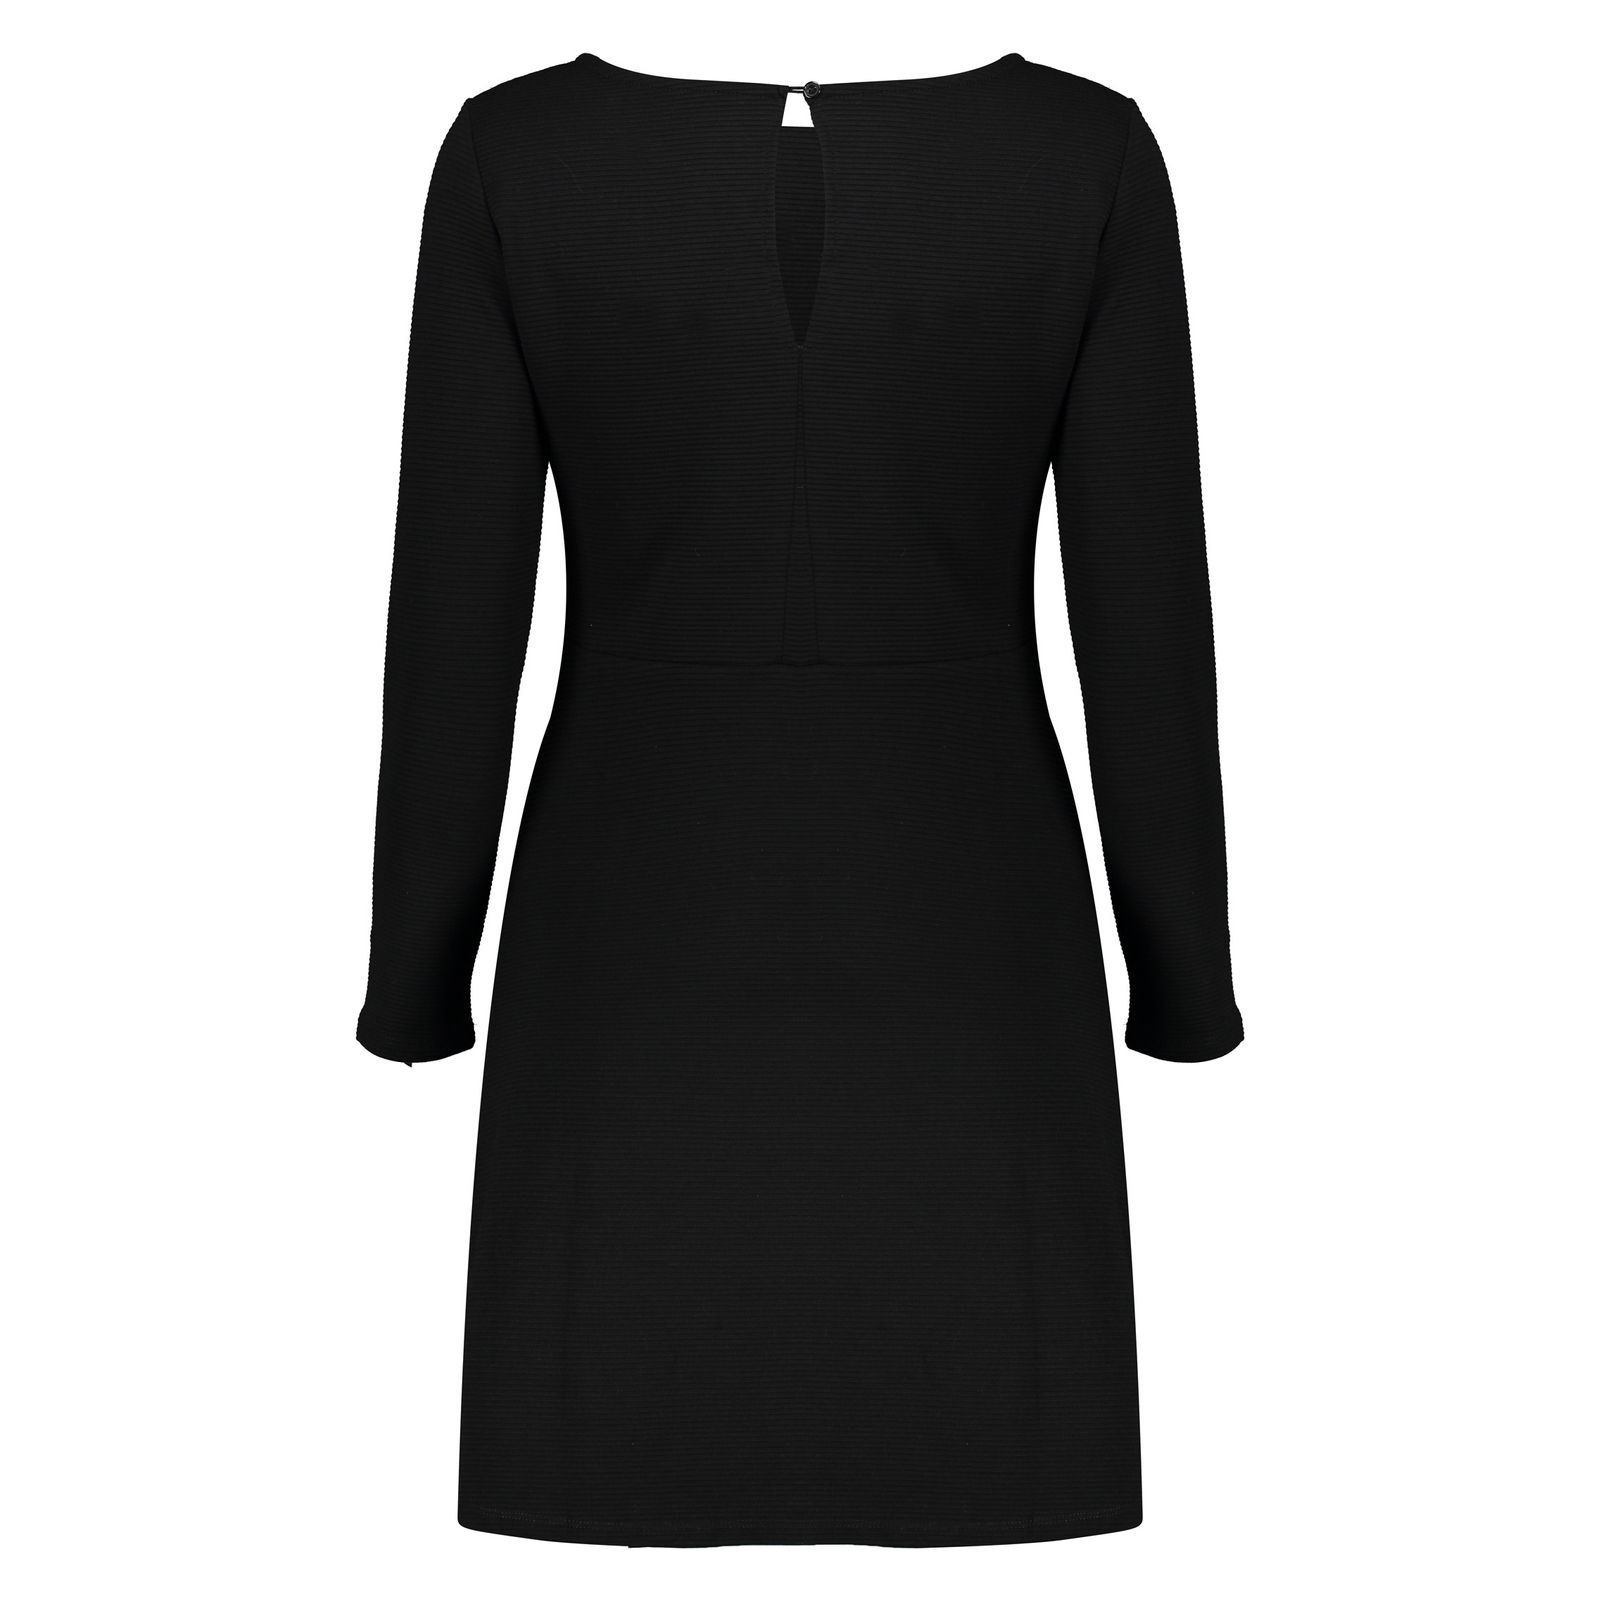 پیراهن زنانه اسپرینگ فیلد مدل 8953562-BLACK - مشکی - 4